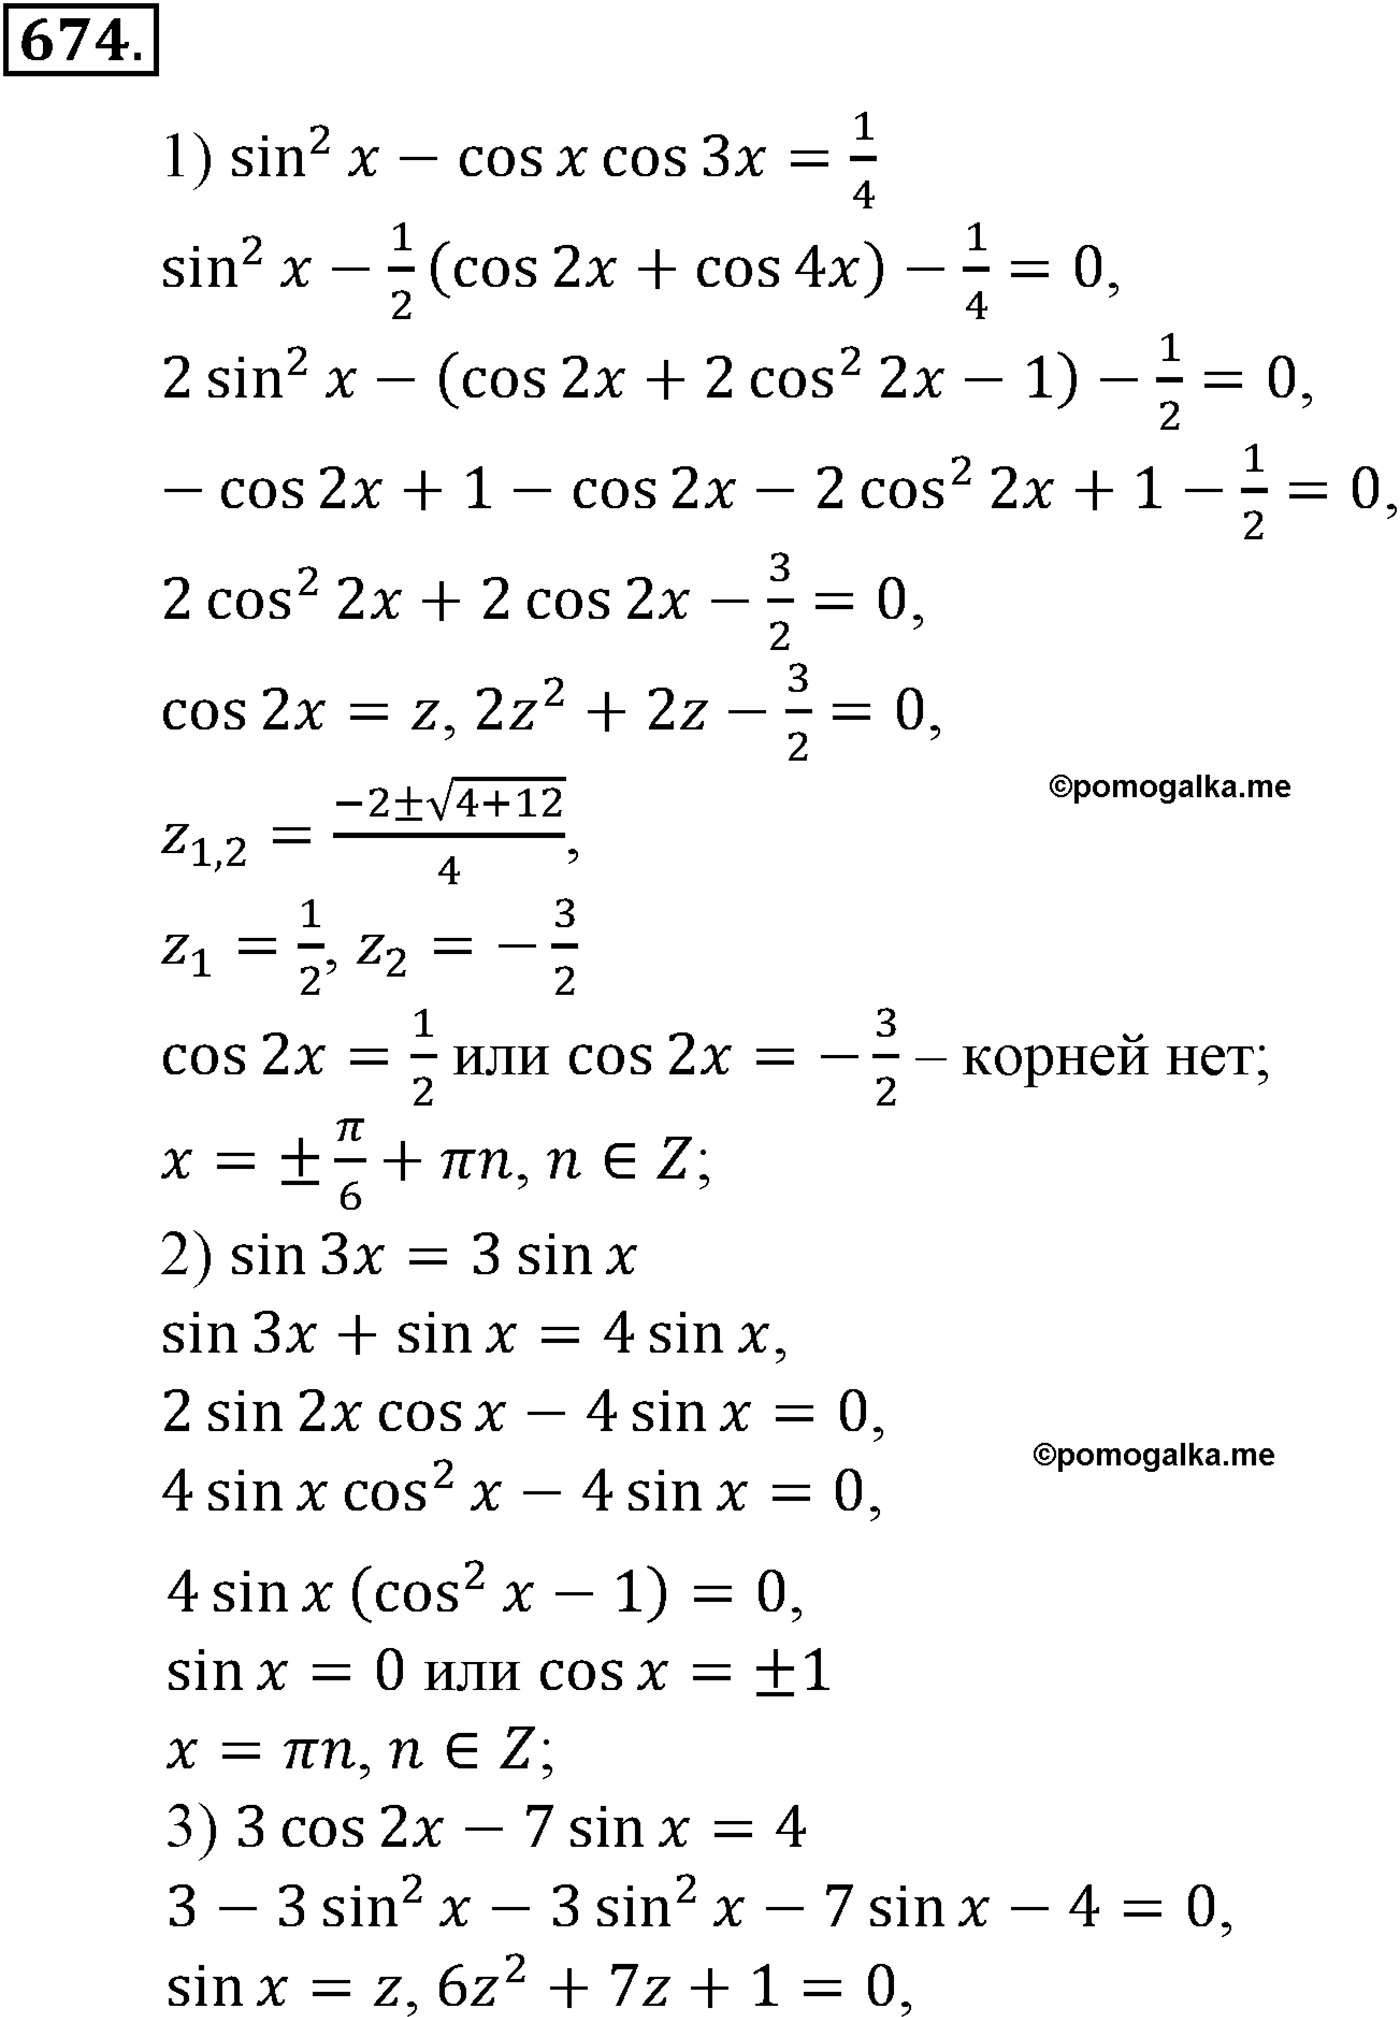 разбор задачи №674 по алгебре за 10-11 класс из учебника Алимова, Колягина